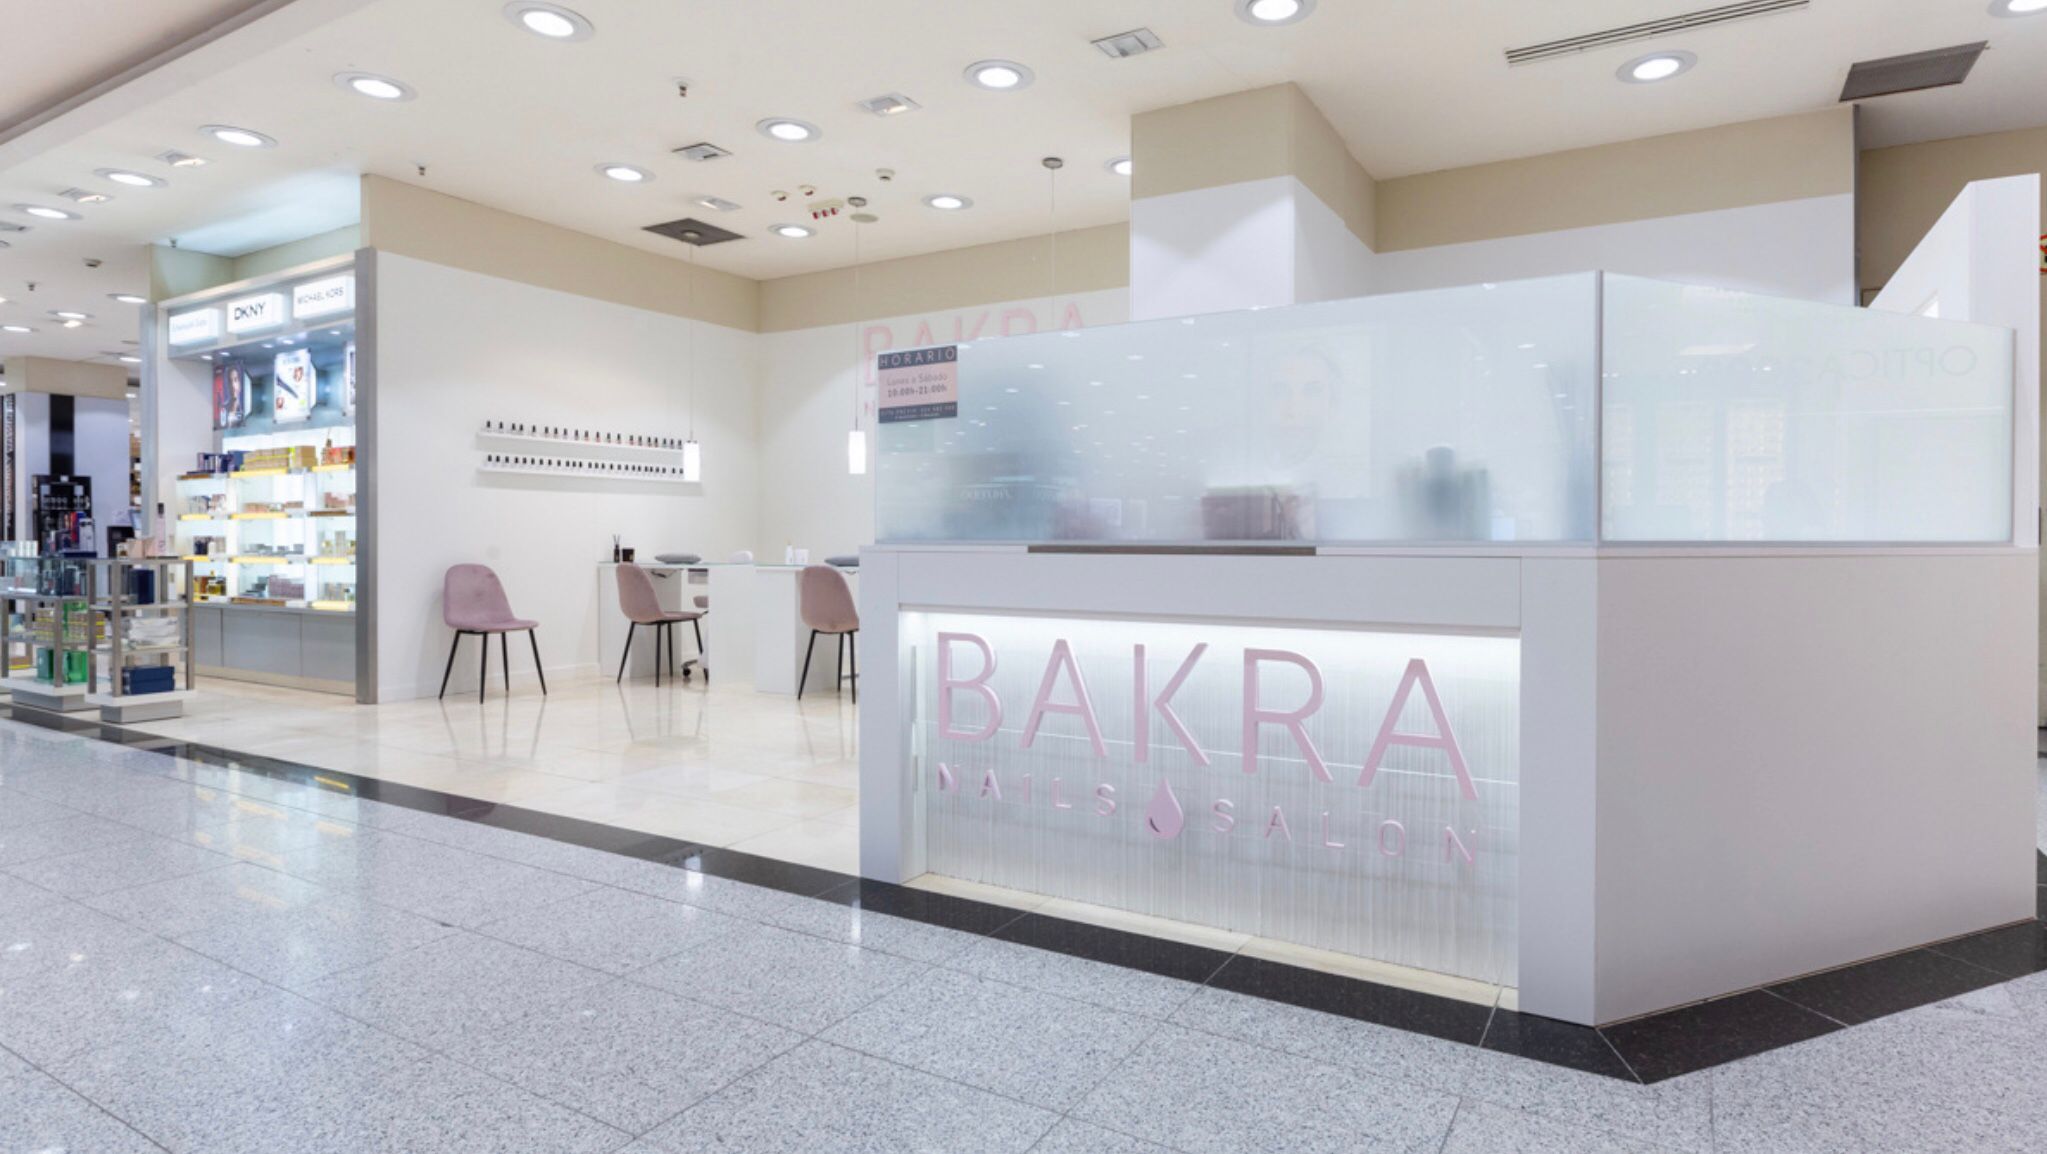 La franquicia Bakra Nails Salón ya opera en El Corte Inglés de Cartagena